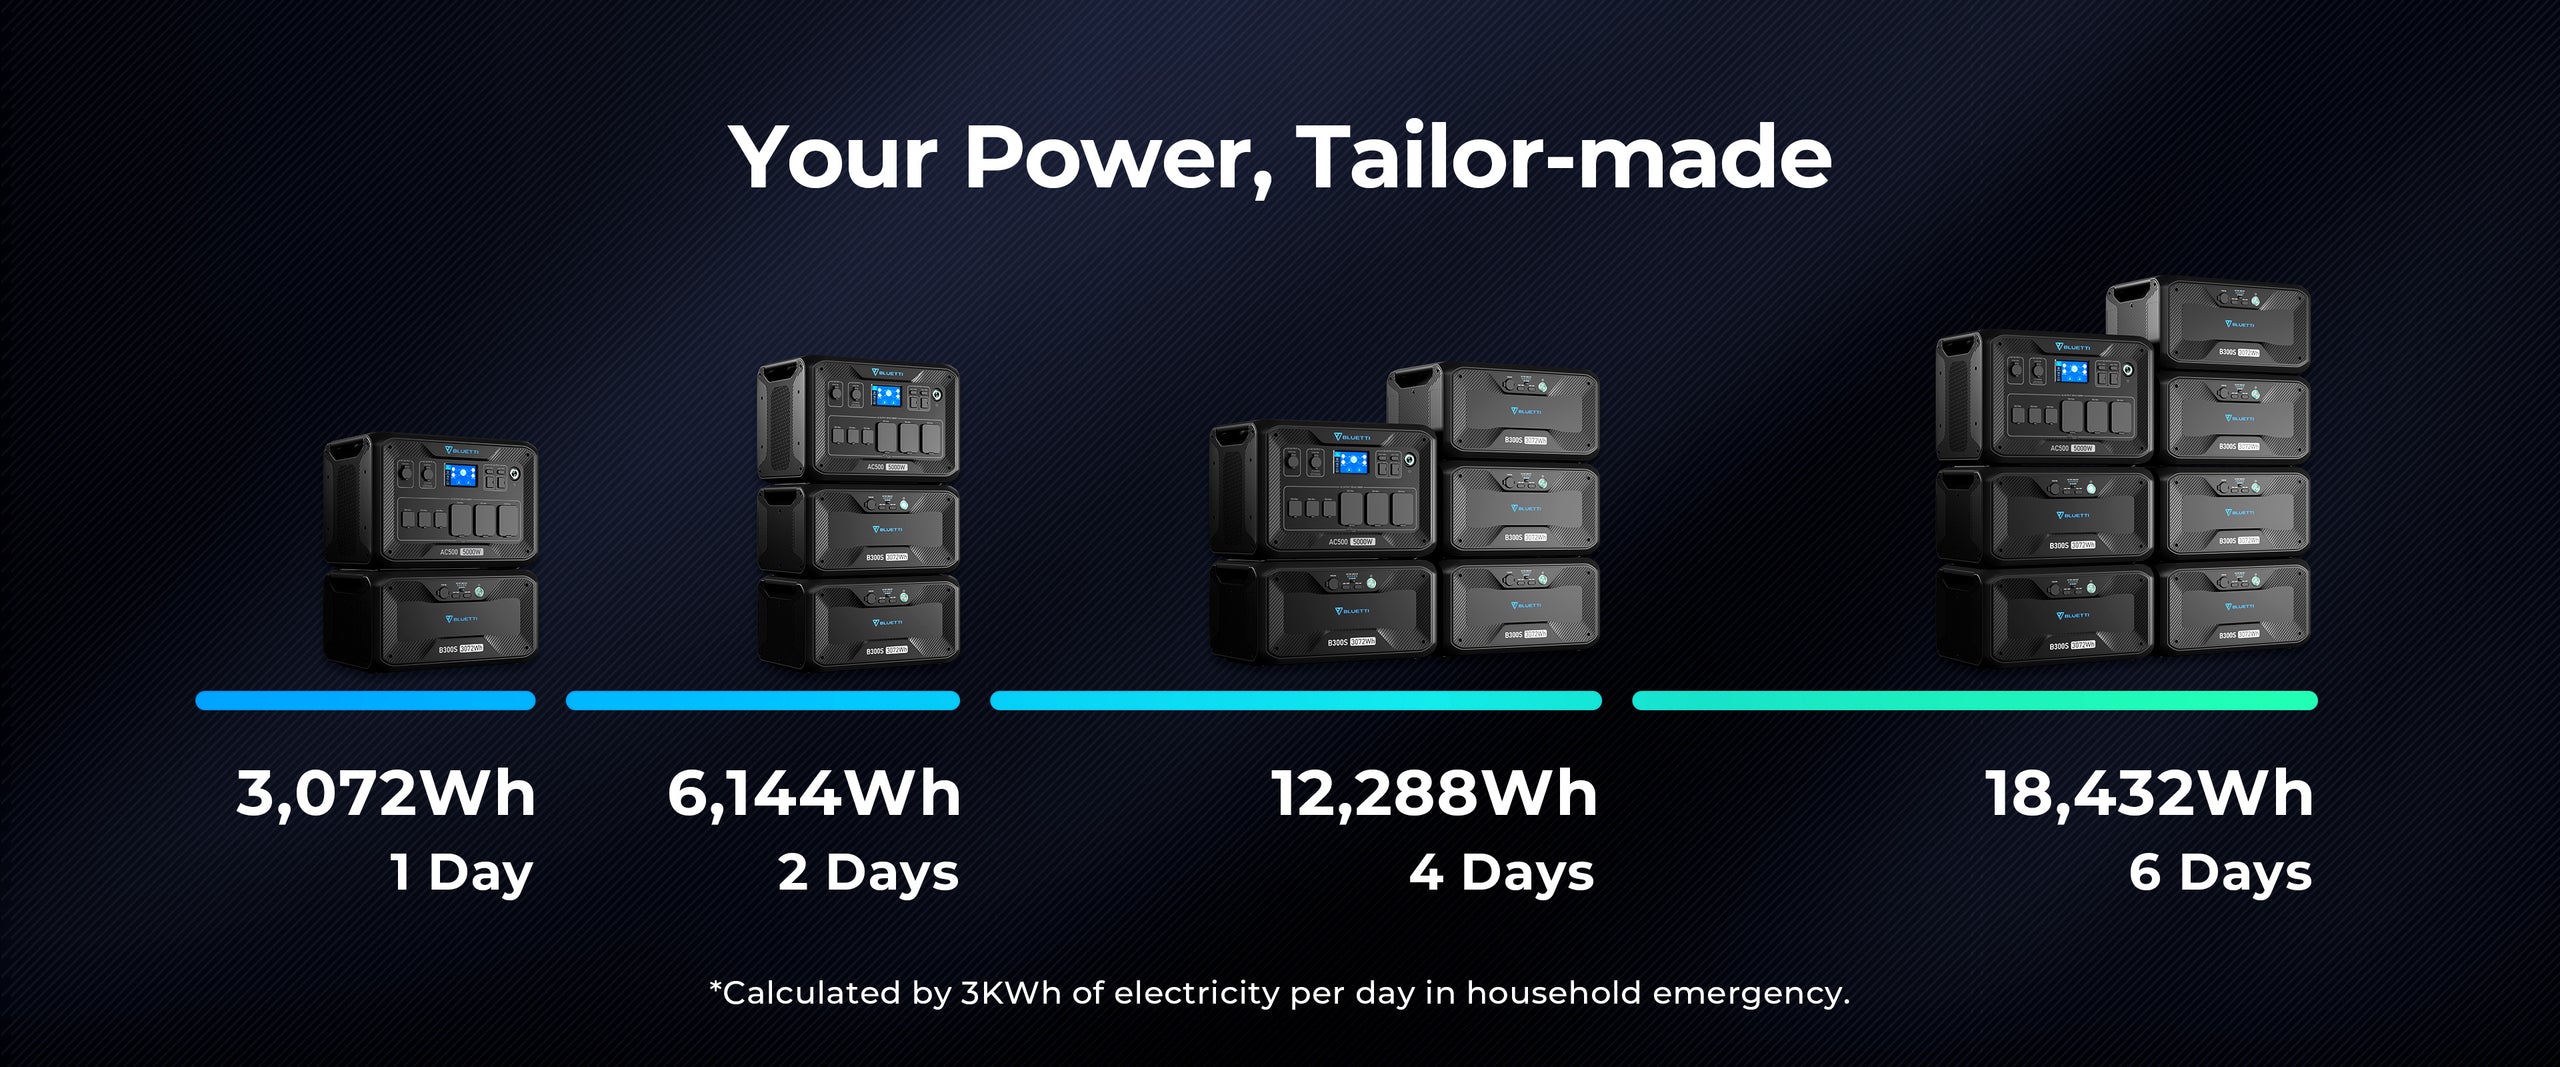 Bluetti EP500 2,000W 5,100Wh + Solar Panels Complete Solar Generator K